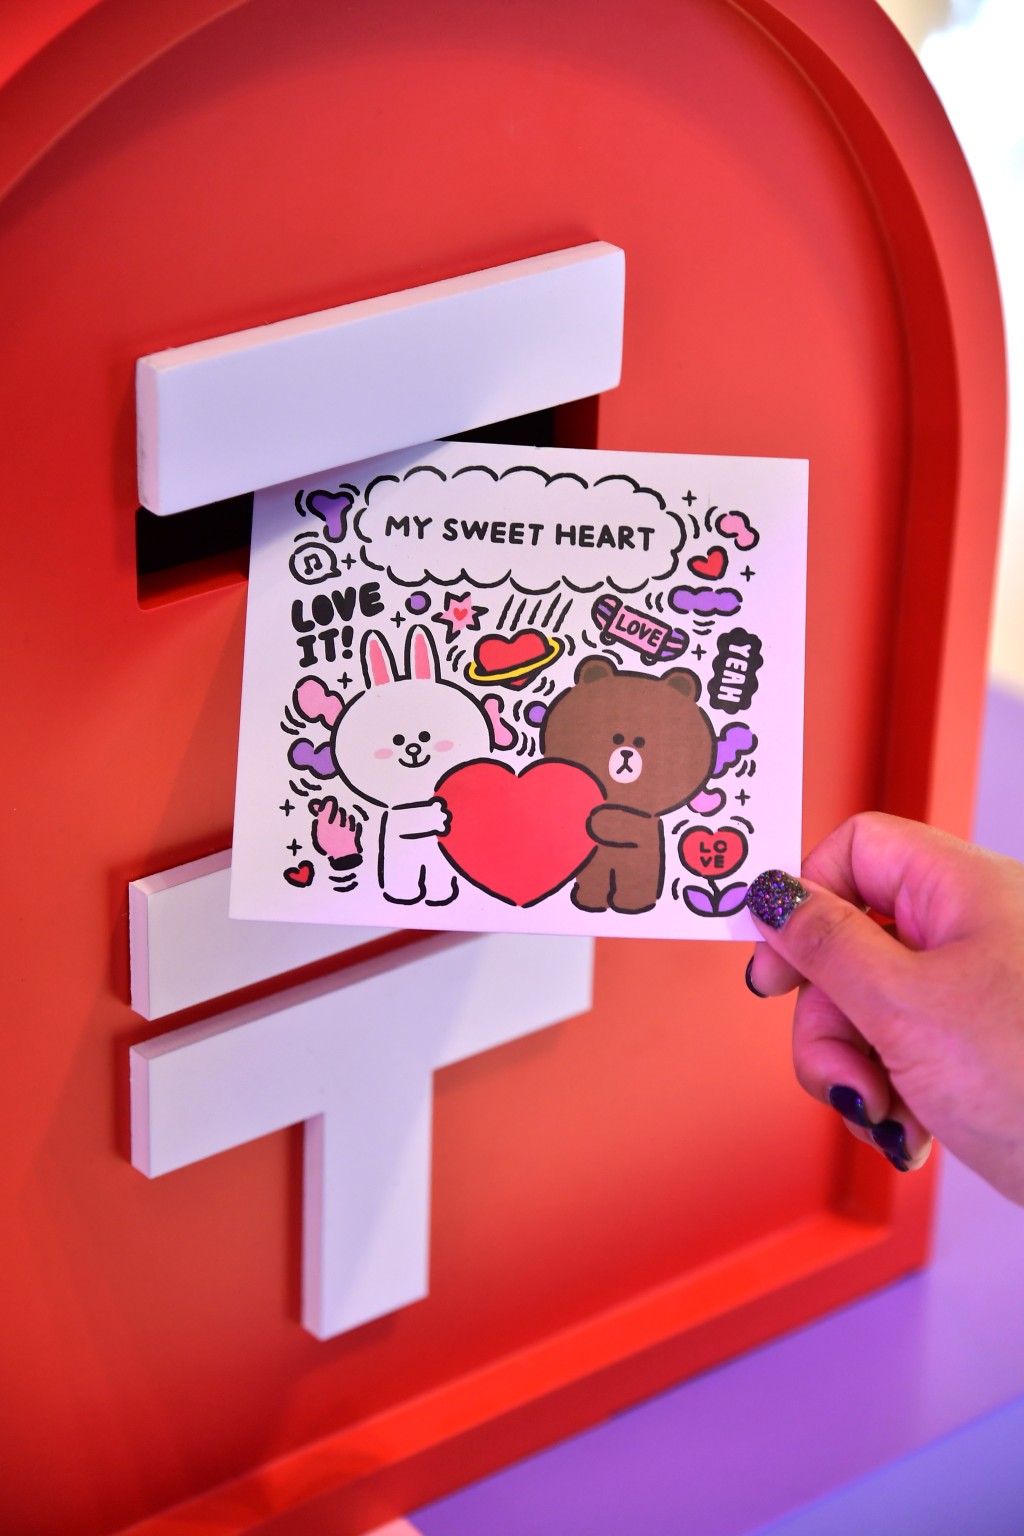 每張寄出的明信片，FTLife 富通保險都會向「Share for Good 愛互送」平台捐$10。